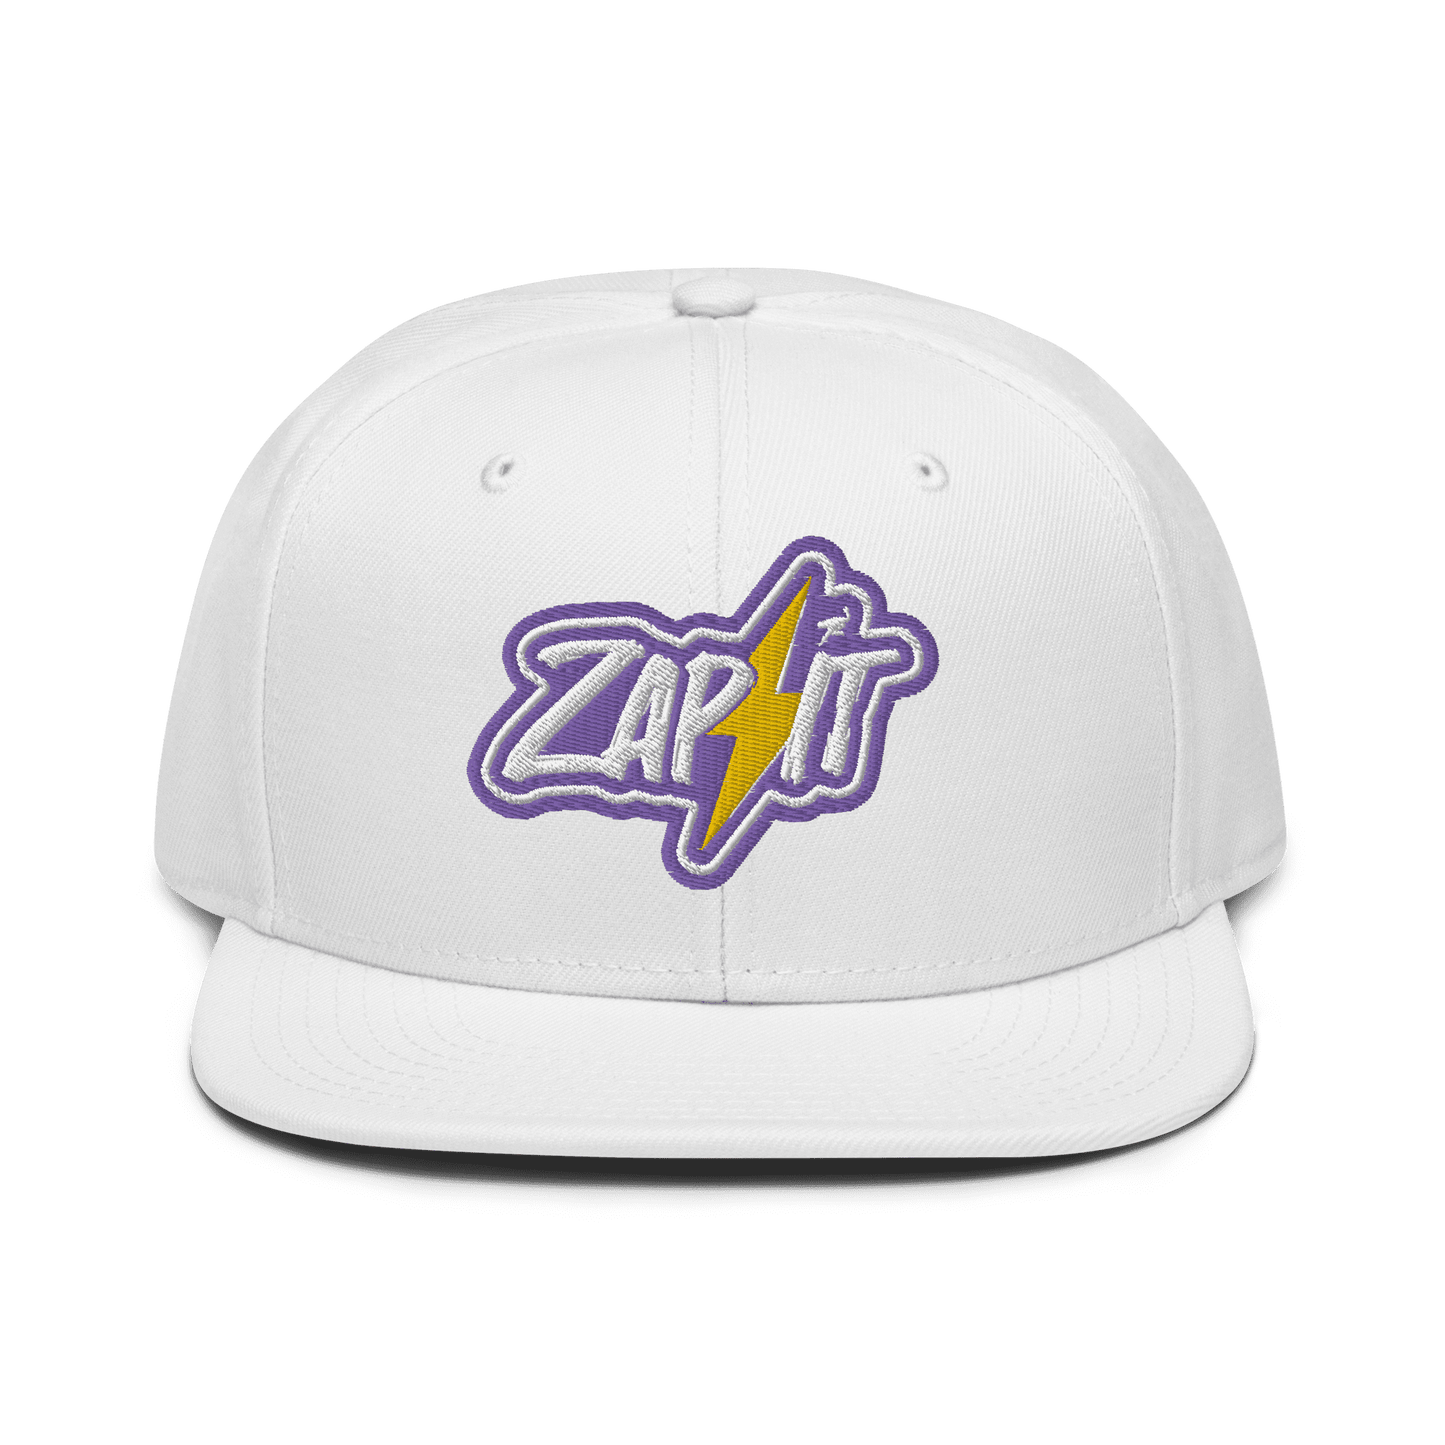 Zap It Snapback Hat